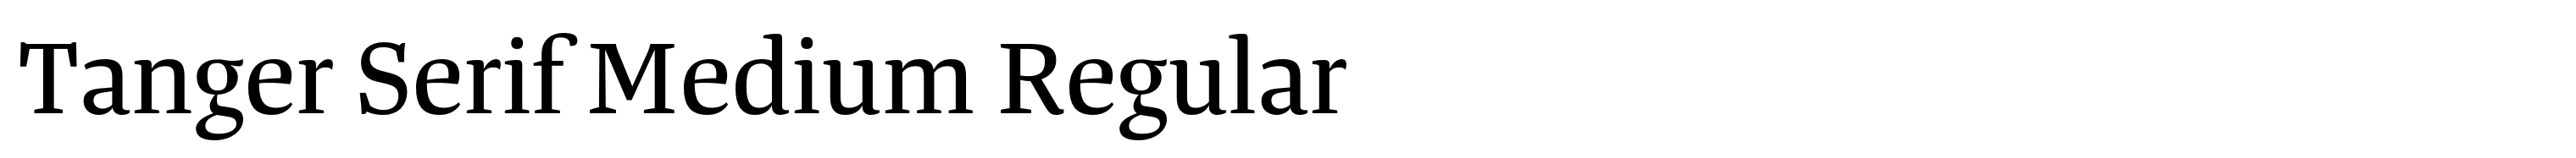 Tanger Serif Medium Regular